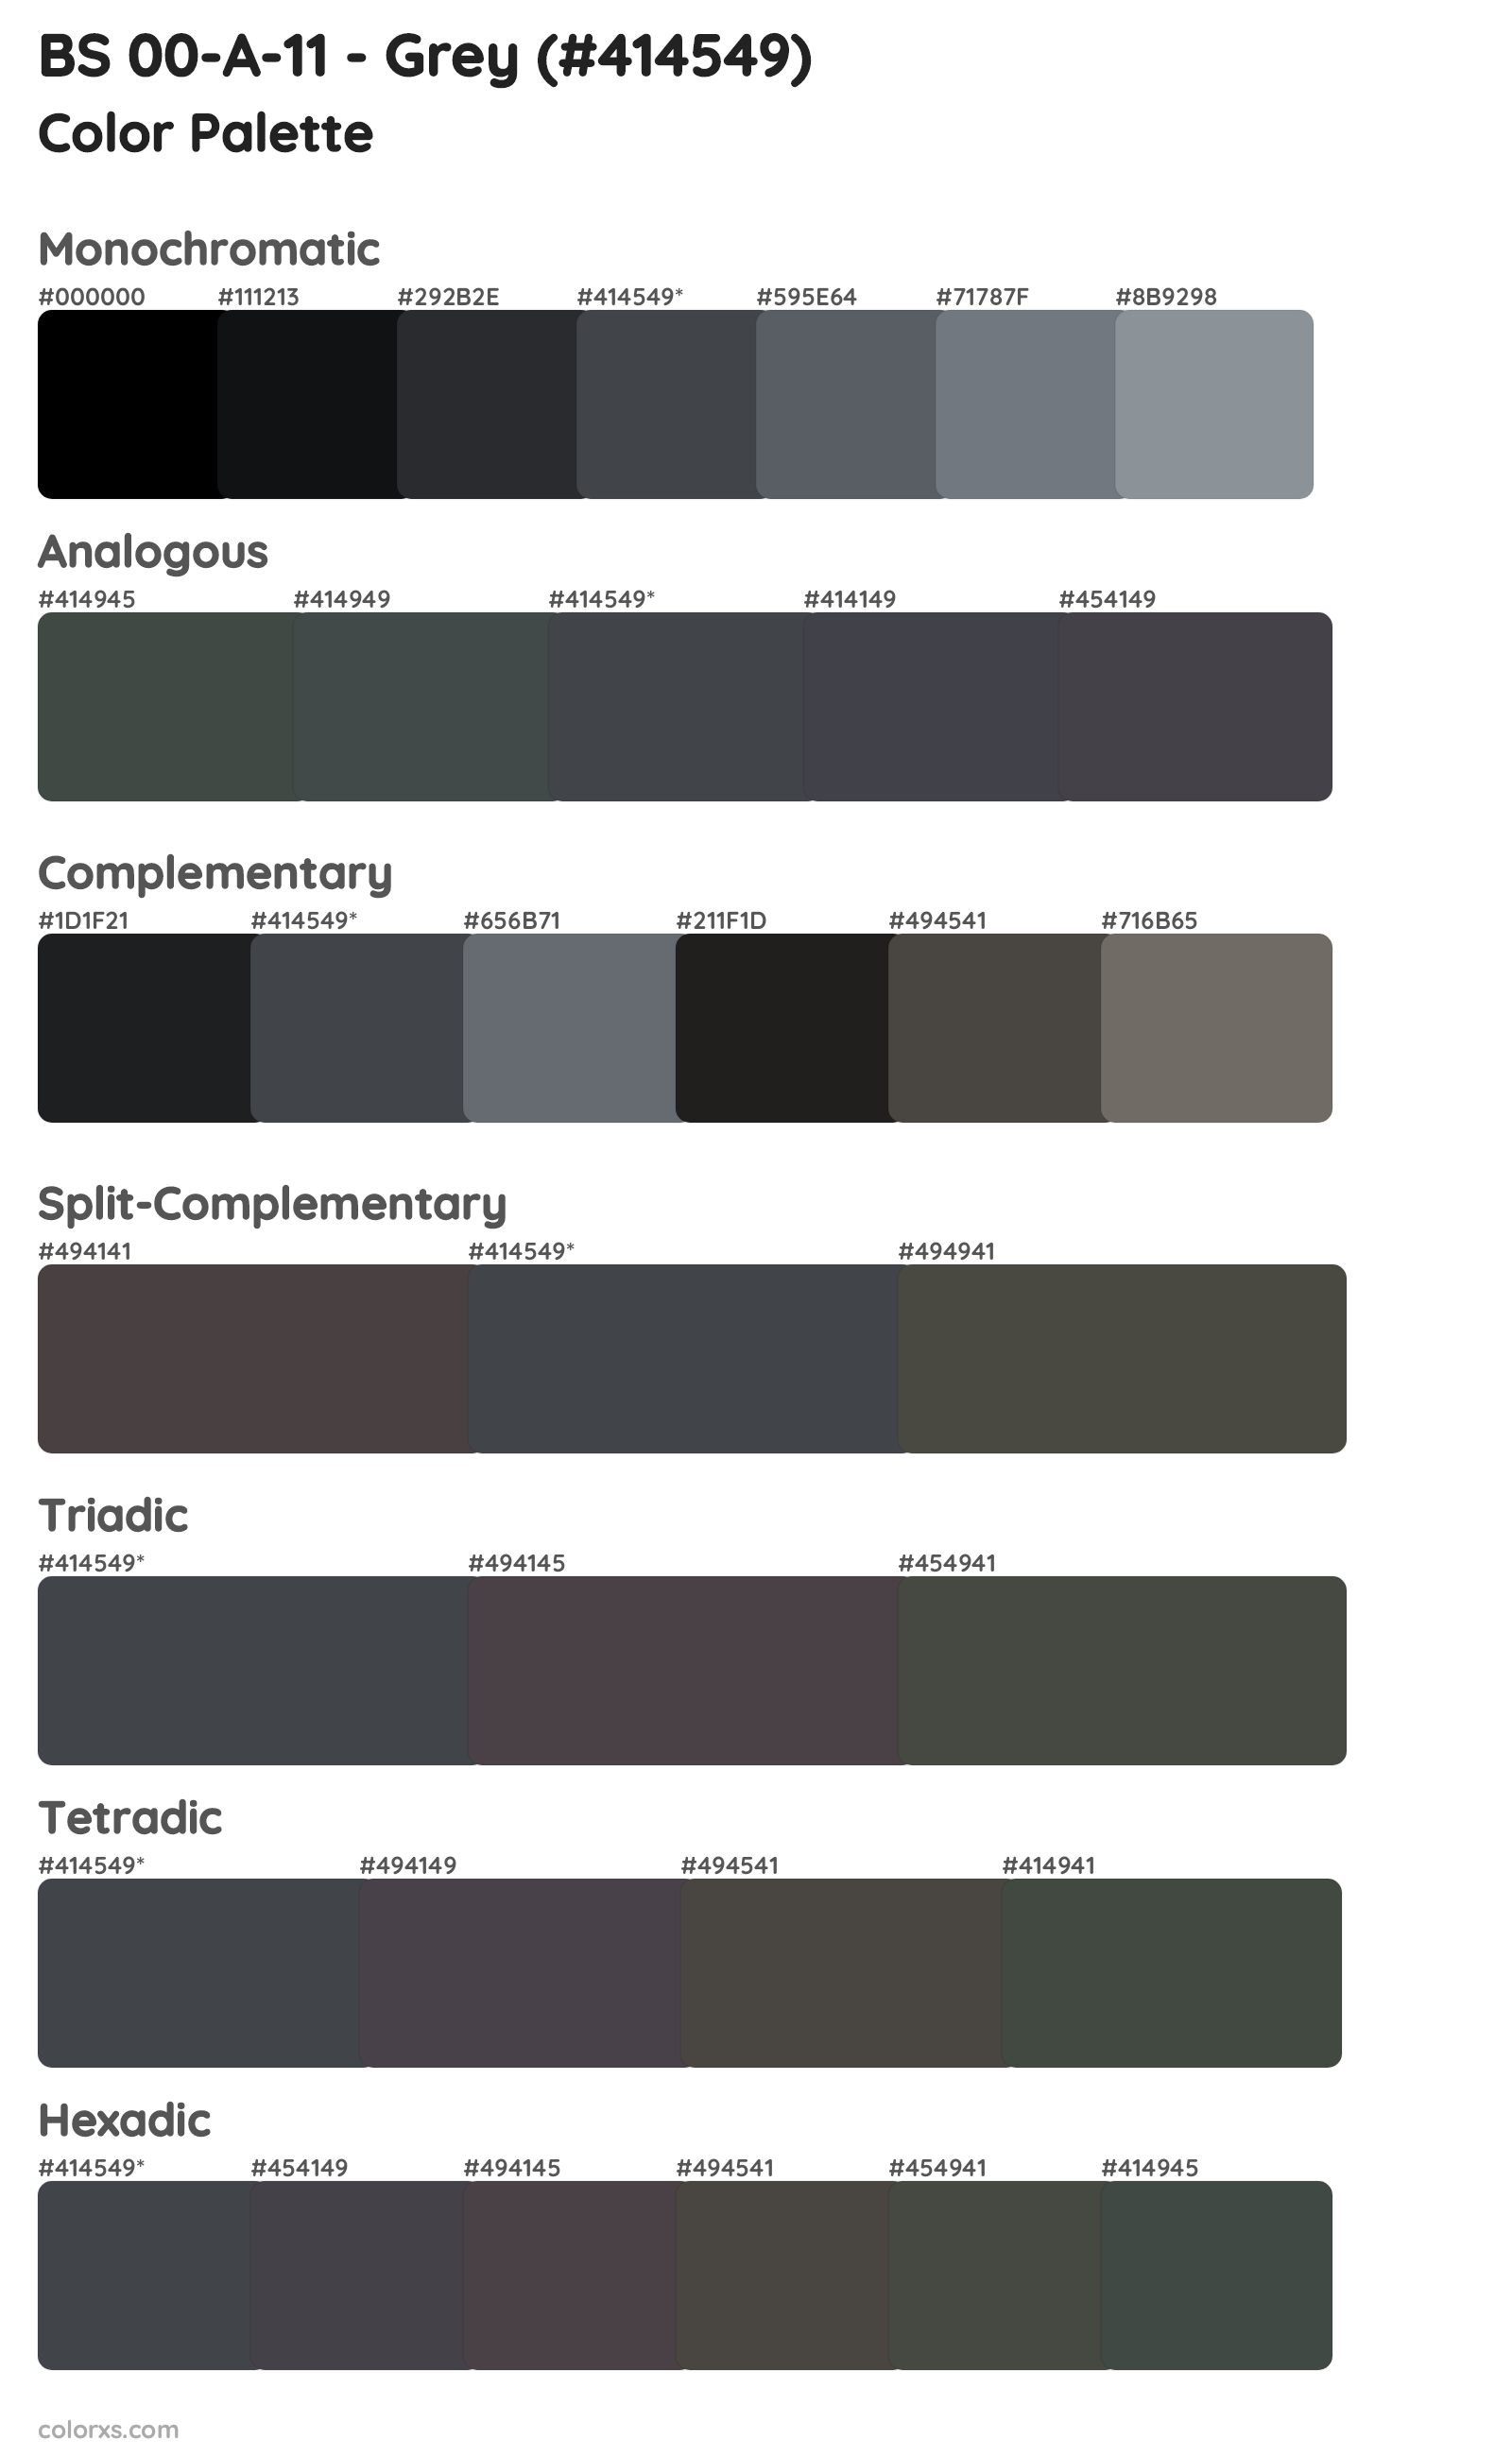 BS 00-A-11 - Grey Color Scheme Palettes